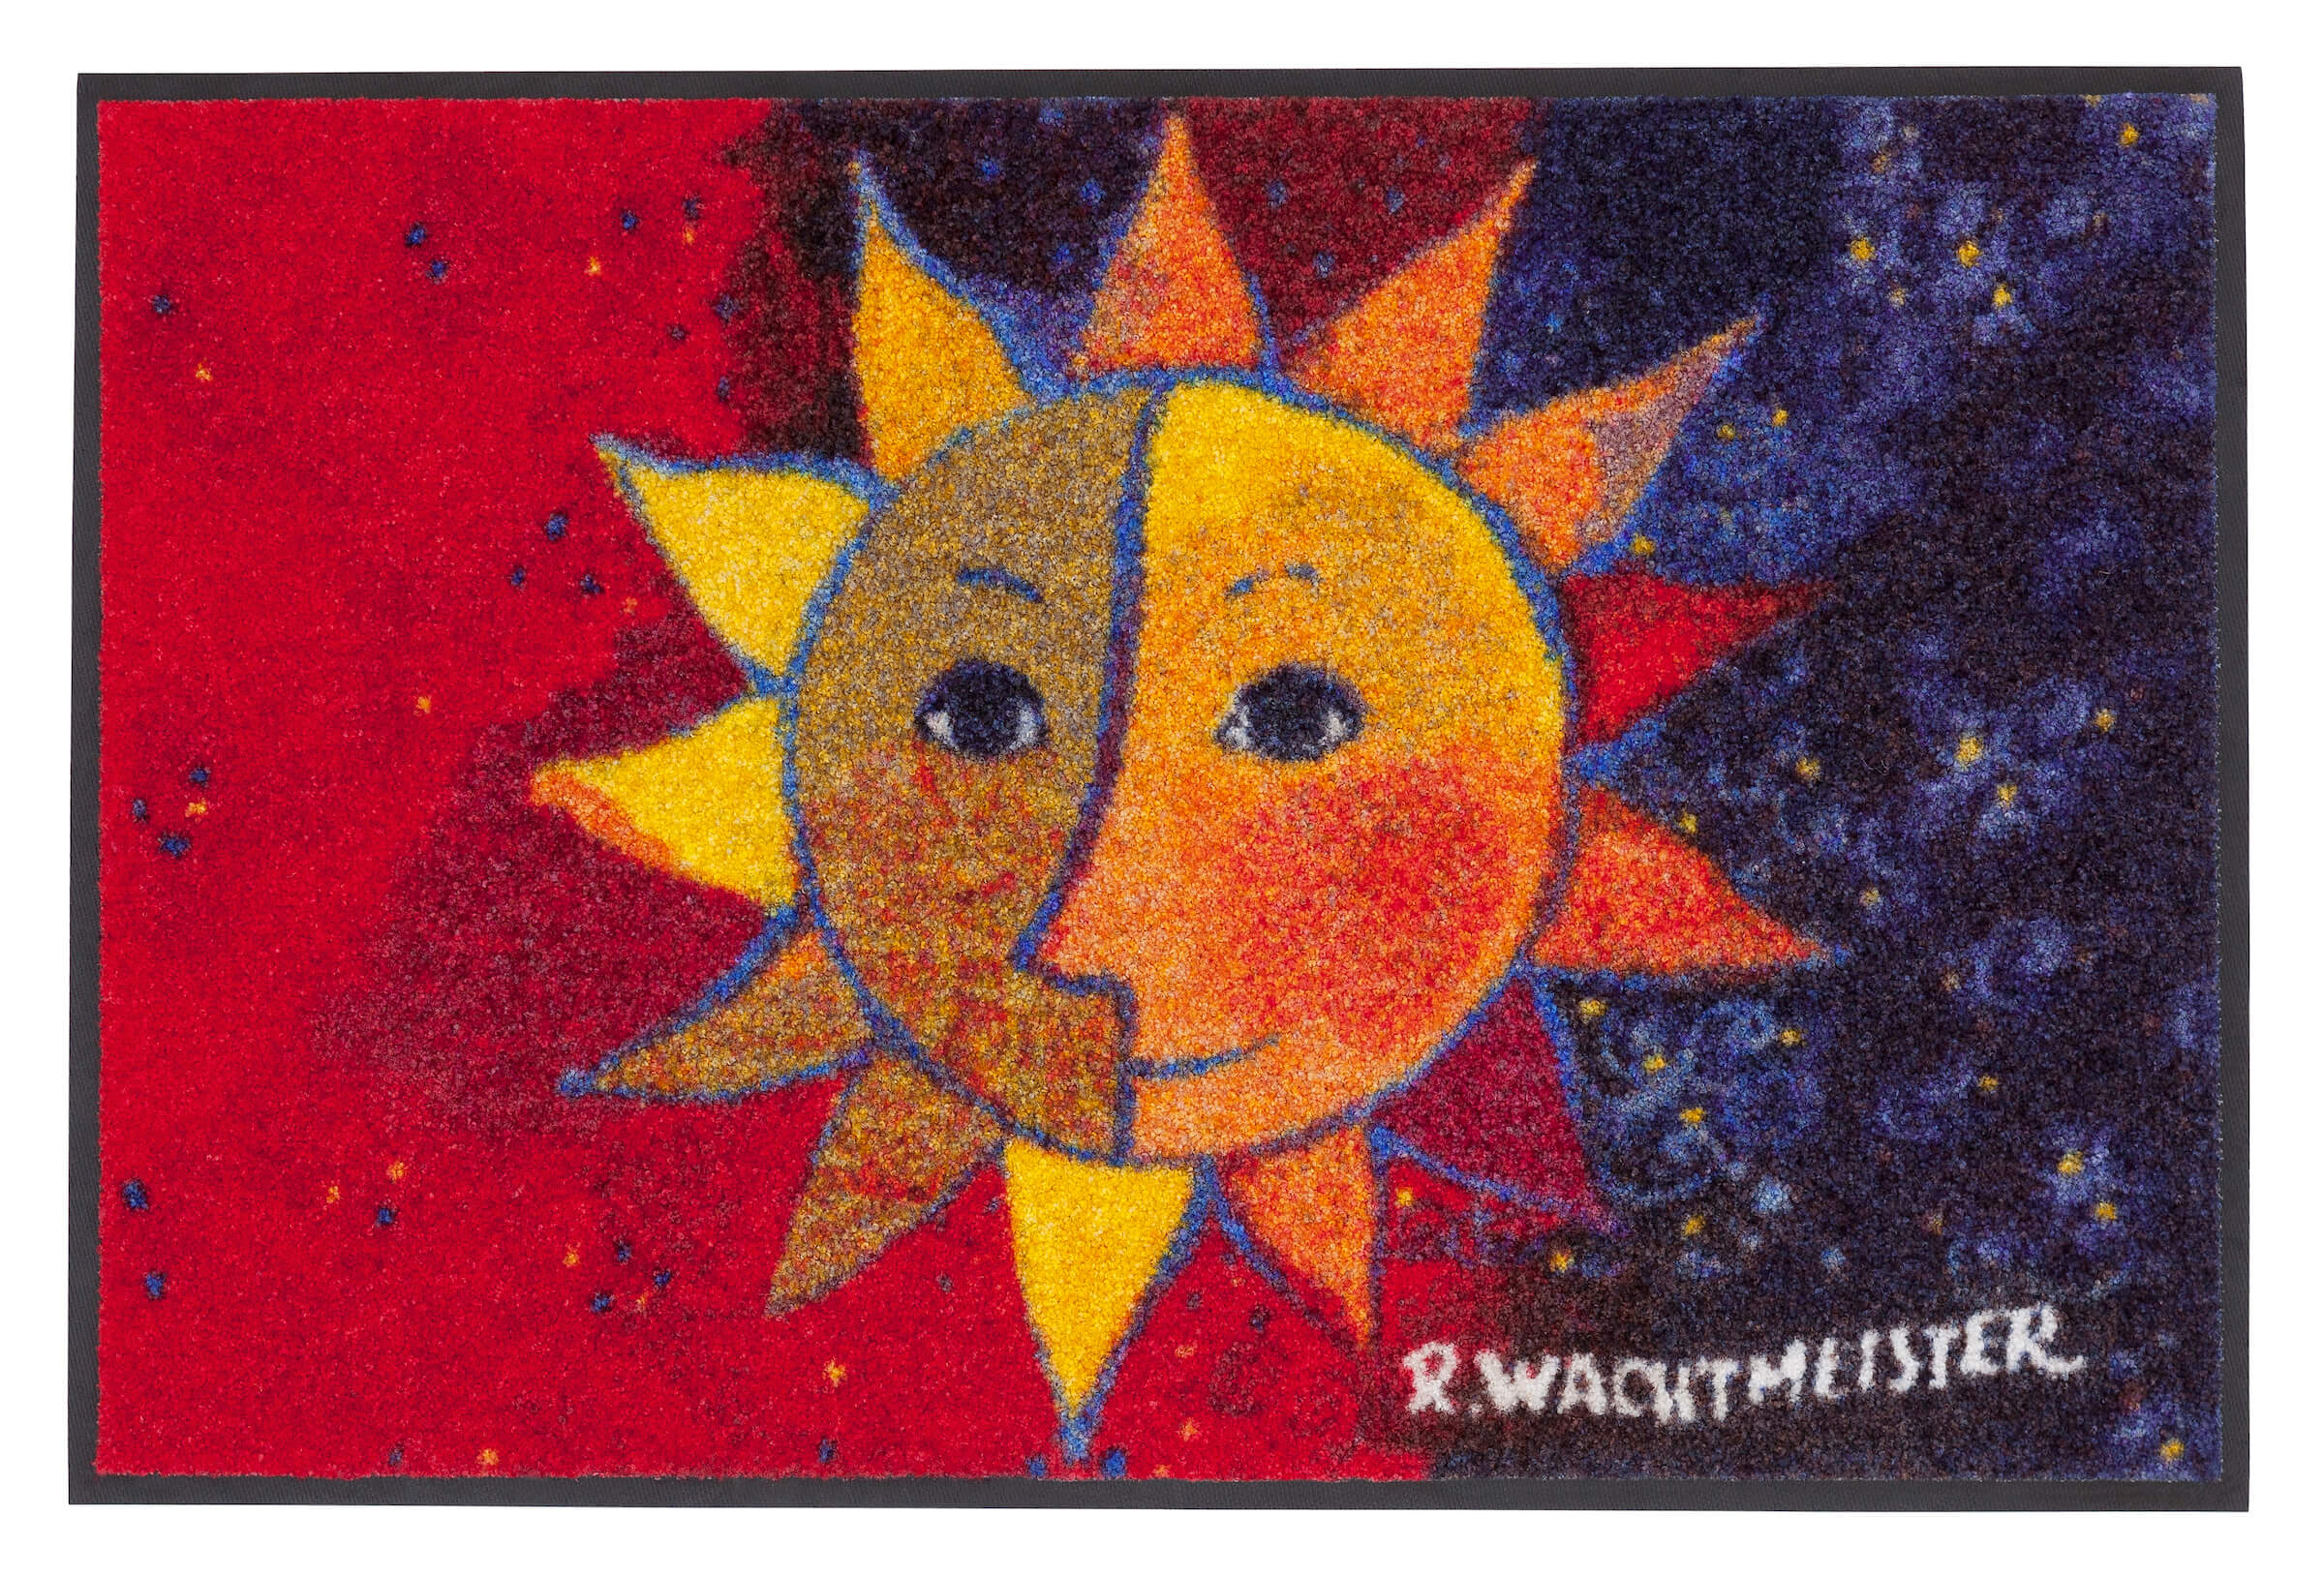 Fußmatte Sole, Rosina Wachtmeister Lifestyle, mehrfarbig, 50 x 75 cm, Draufsicht